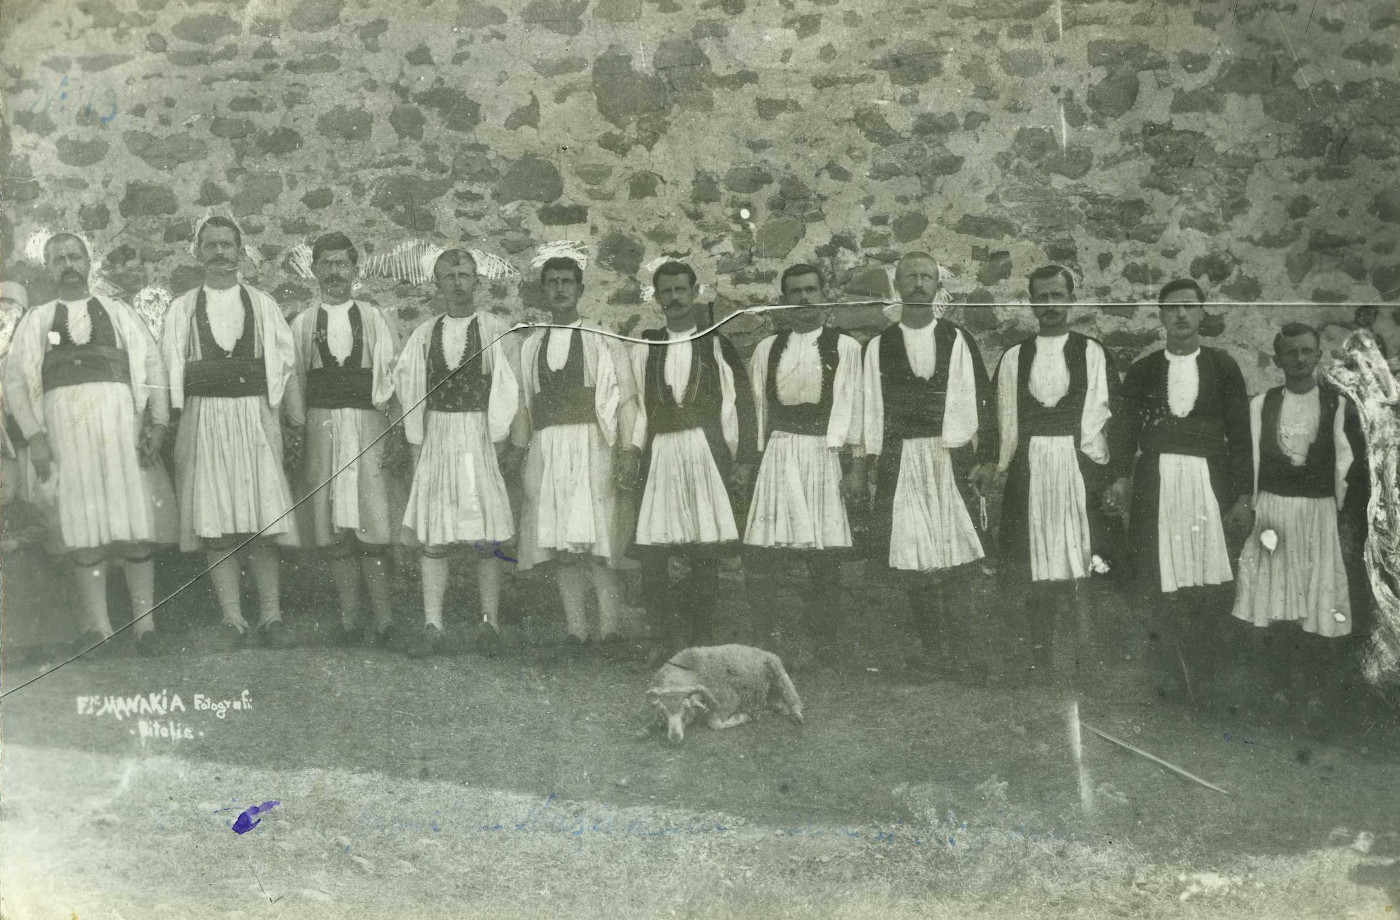 Φωτογραφία μελών της οικογένειας Νασίκα στη Σμίξη Γρεβενών. Φωτογράφος: Αδελφοί Μανάκια (Αρχείο Αλέξανδρου Μαλλιά, Συλλογή Ιδρύματος Μουσείου Μακεδονικού Αγώνα και της Νεότερης Ιστορίας της Μακεδονίας)